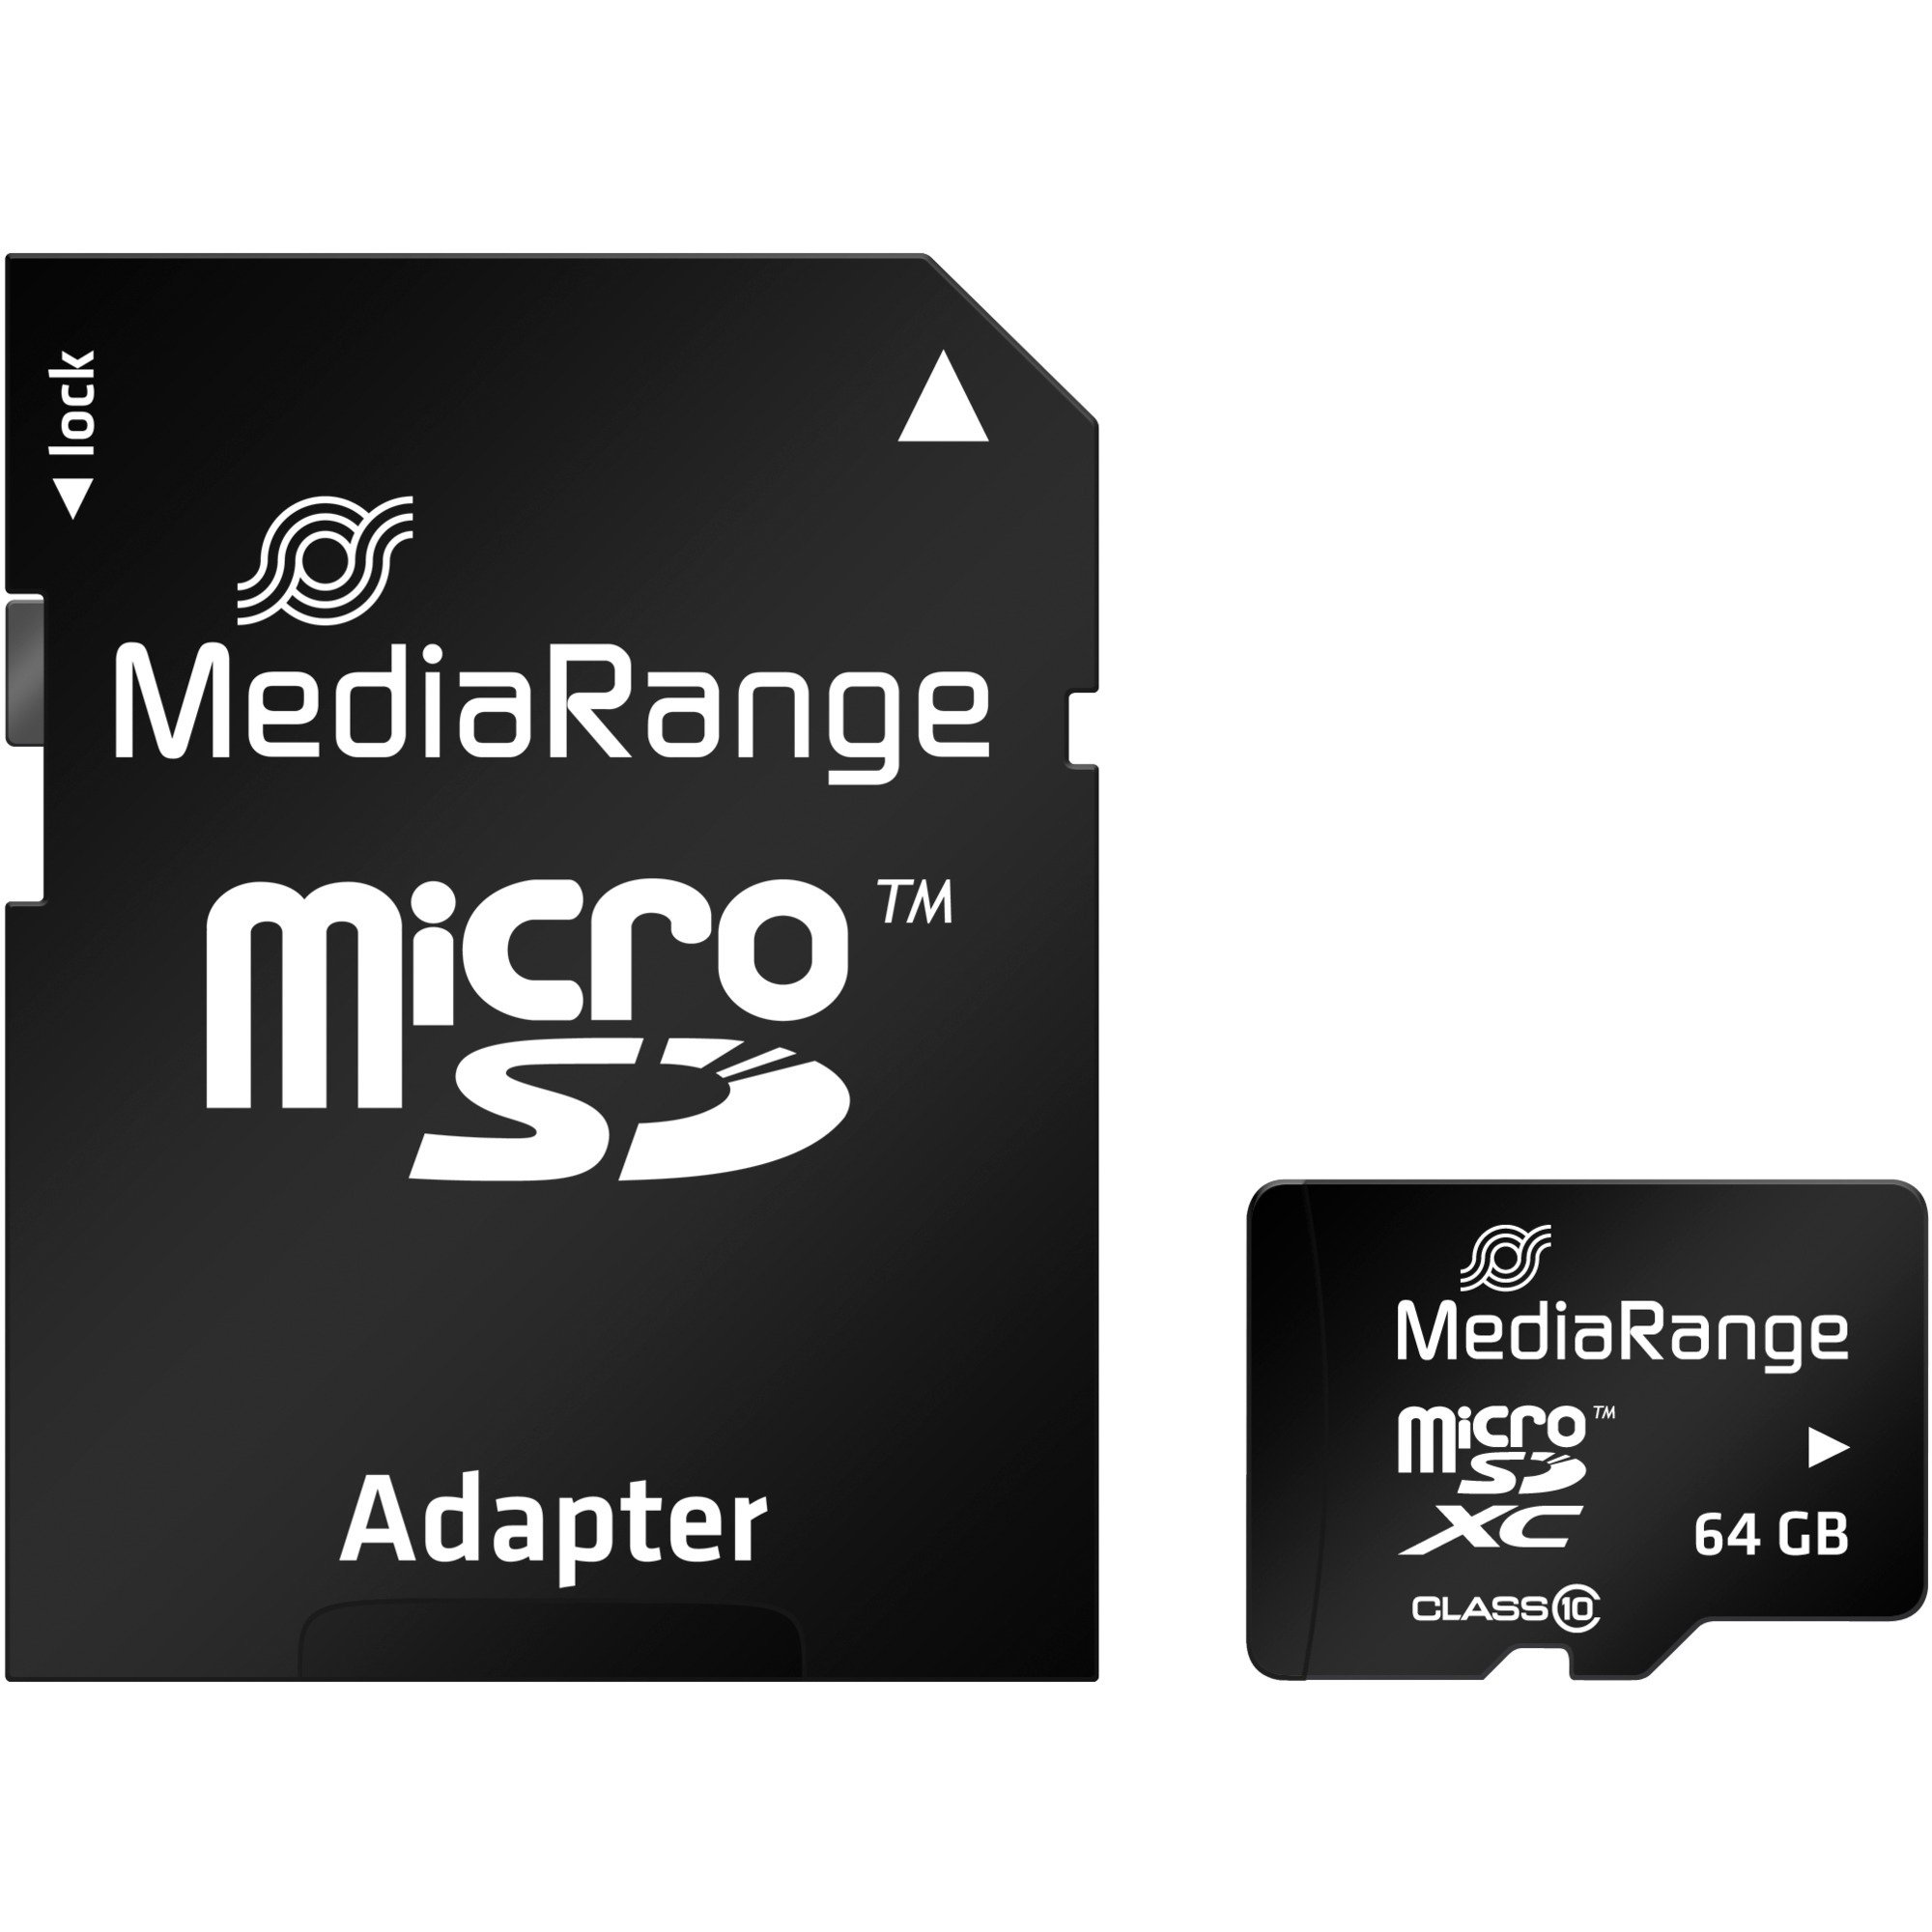 Image of Alternate - 64 GB microSDXC, Speicherkarte online einkaufen bei Alternate